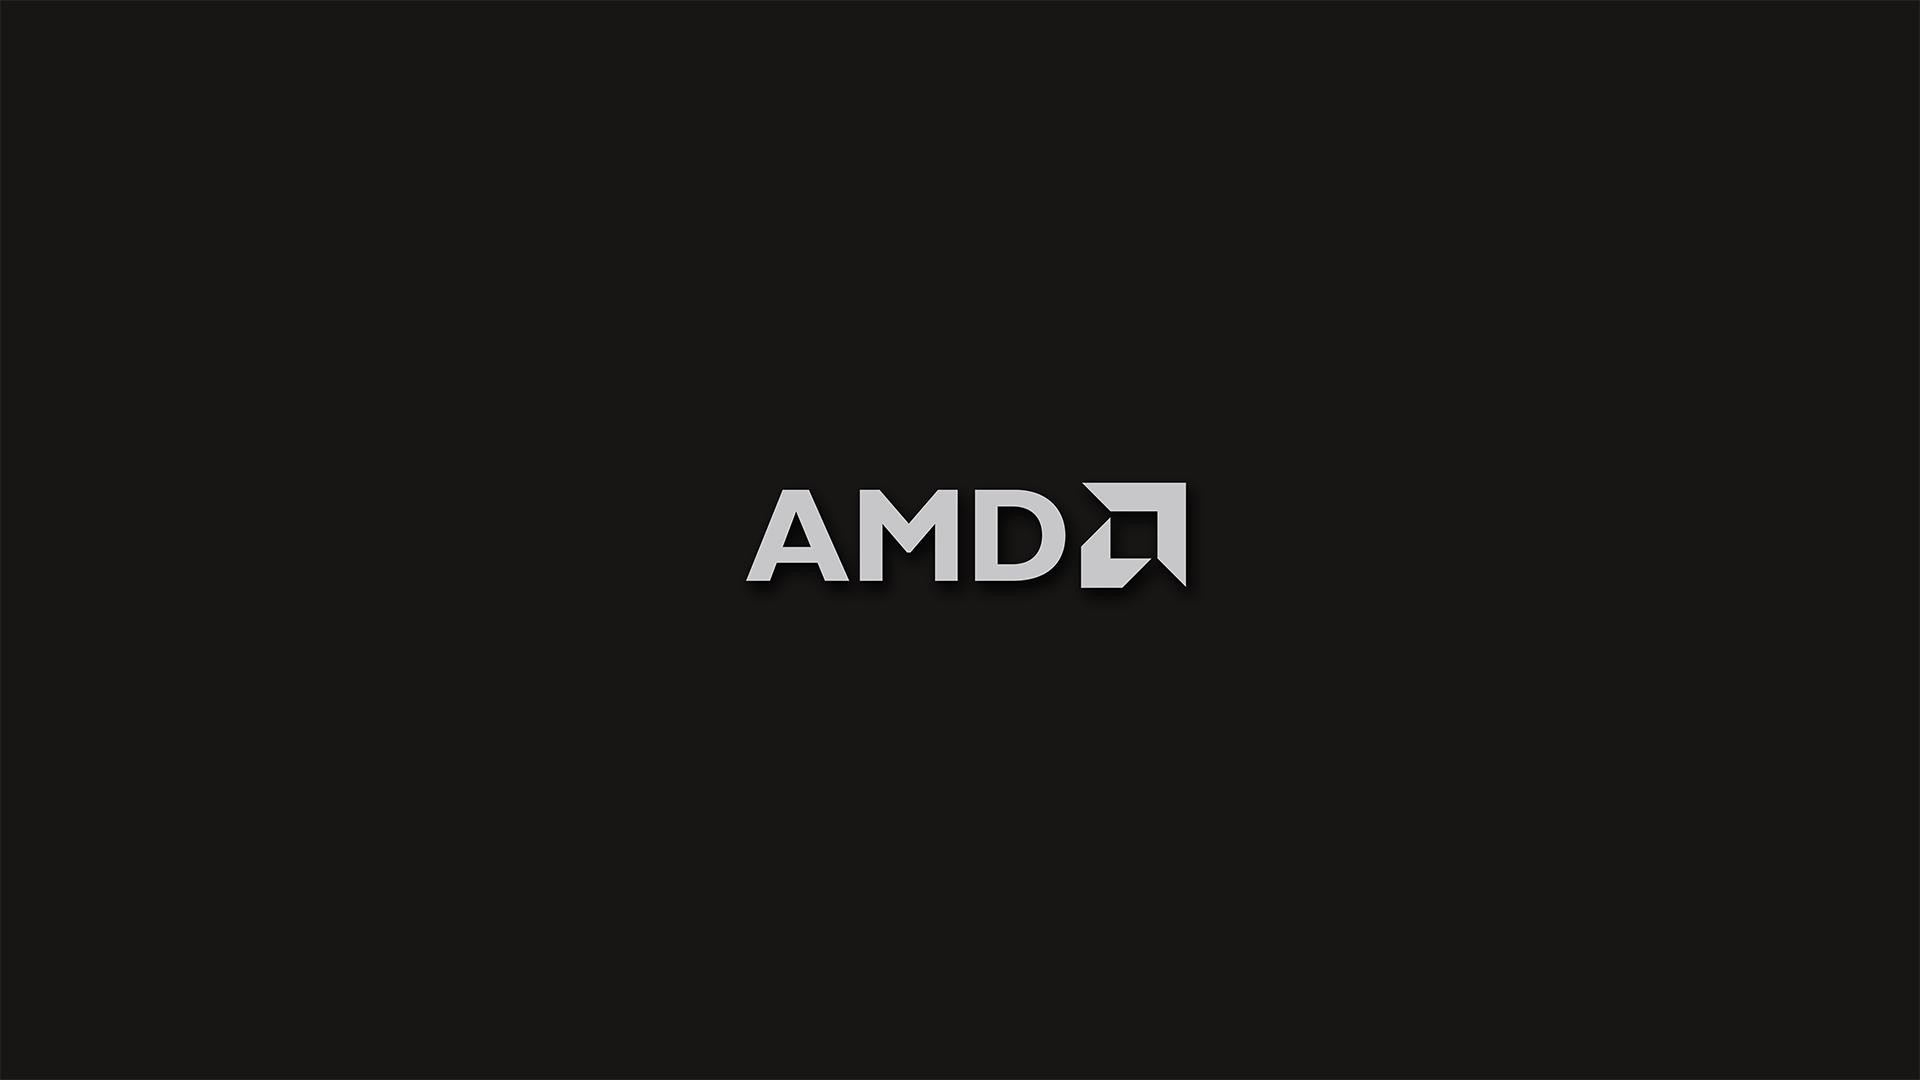 AMD Radeon Wallpapers – WallpaperSafari